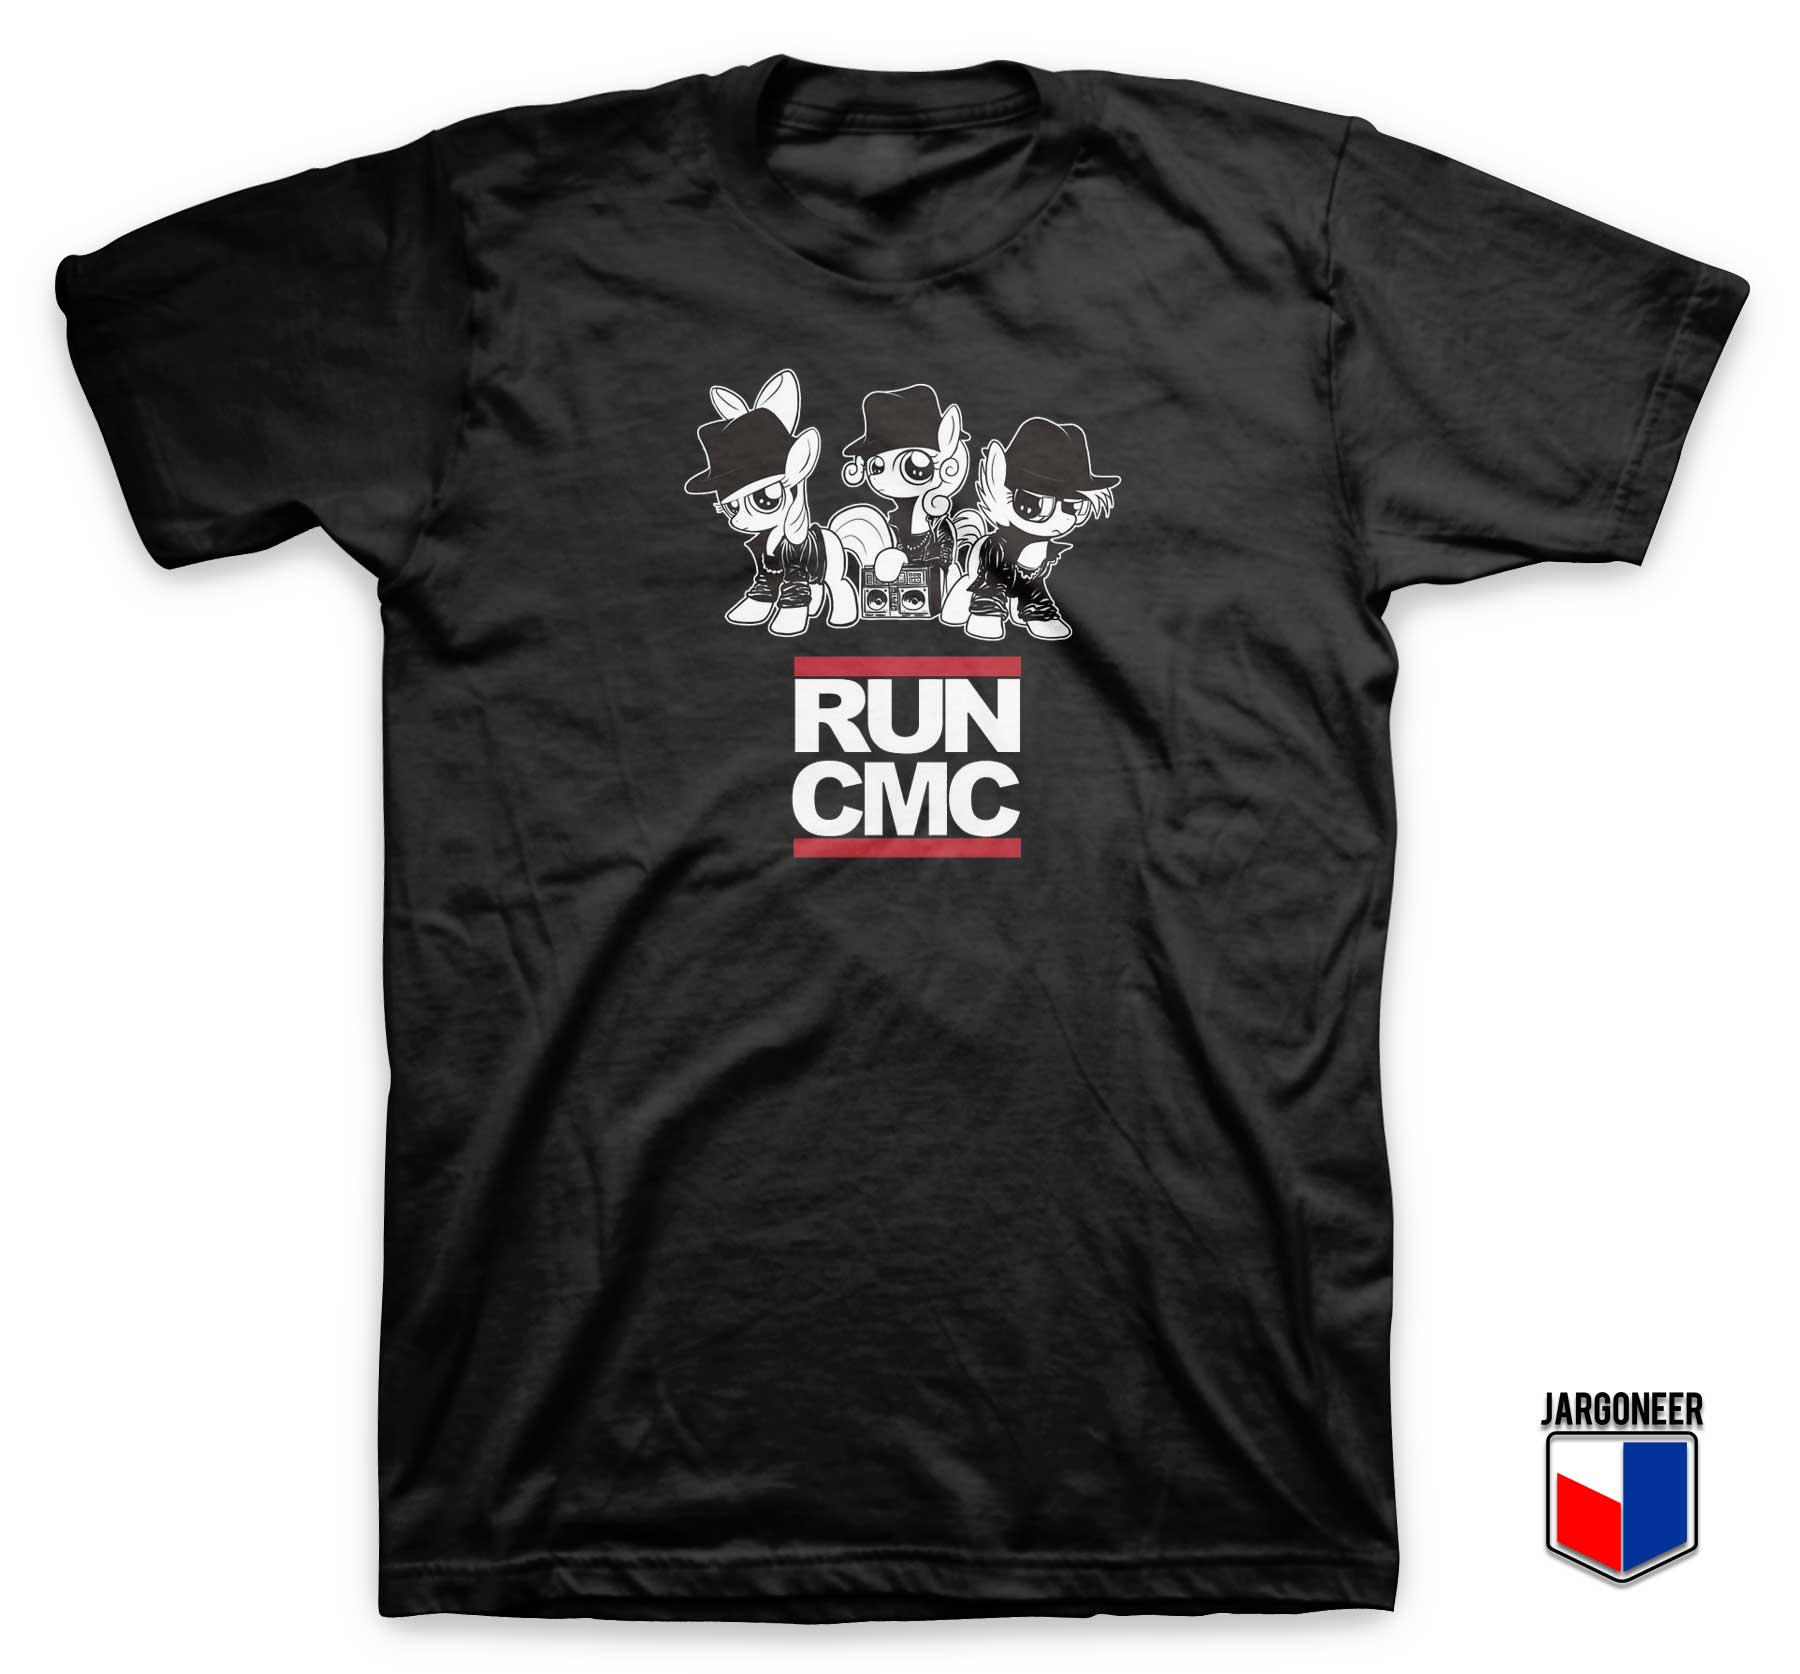 Run CMC Little Pony T Shirt - Shop Unique Graphic Cool Shirt Designs